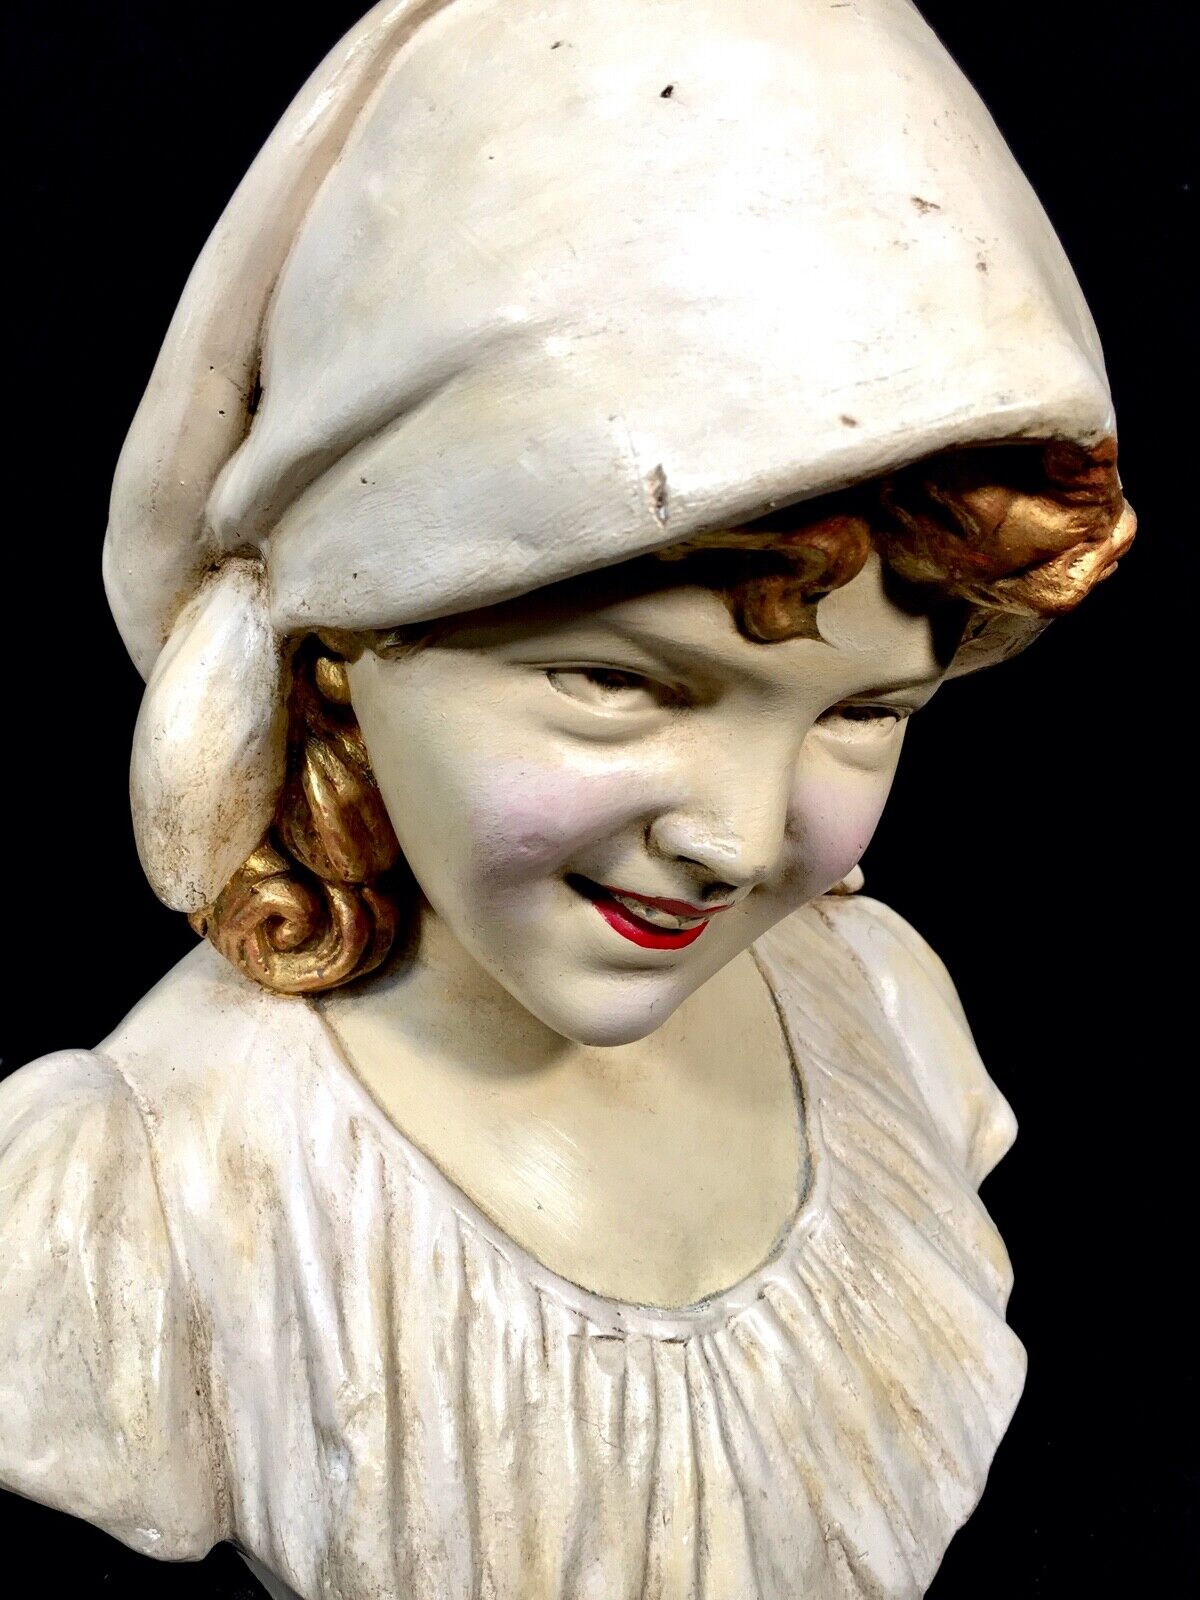 Antique French Girl Plaster Portrait Bust / Art Nouveau / c1890 / Sculpture